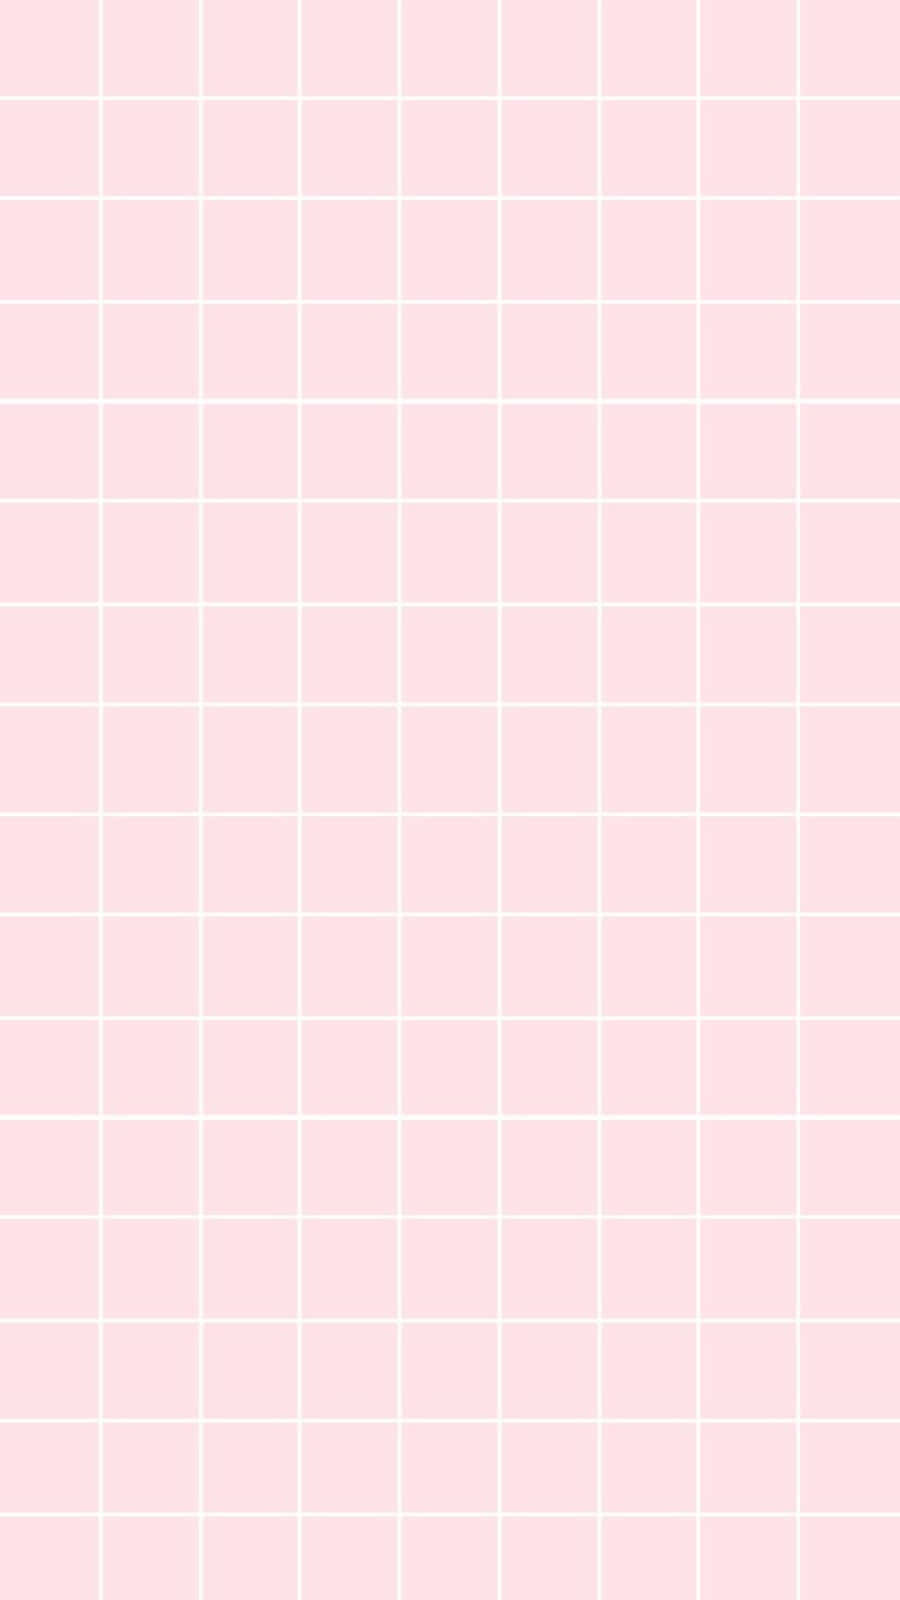 Unmapa De Cuadros Rosados Con Cuadros Blancos. Fondo de pantalla